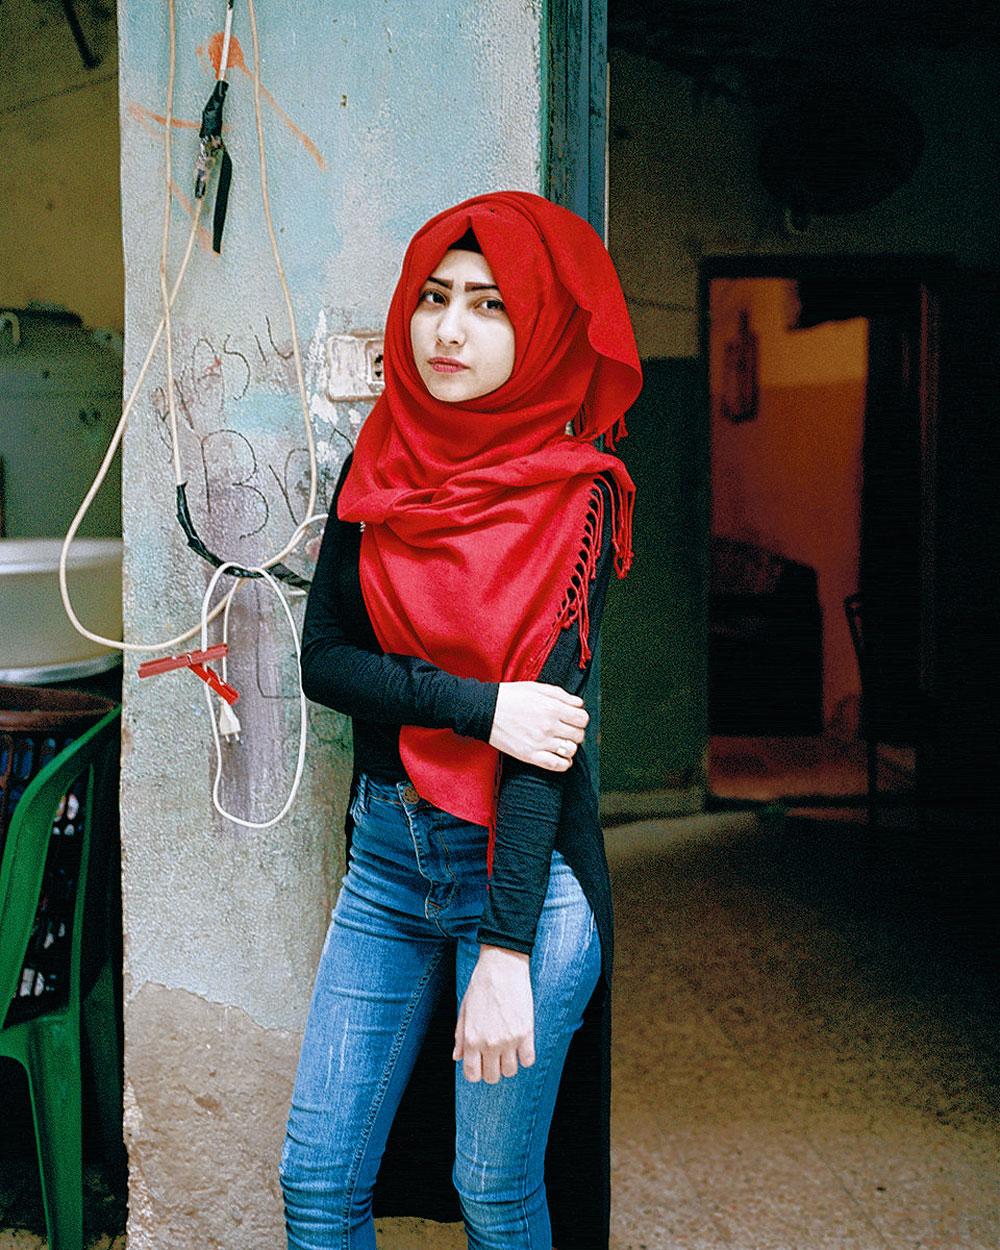 Samira à 16 ans, camp de réfugiés de Bourj El Barajneh, Beyrouth, Liban, Rania Matar, 2016.